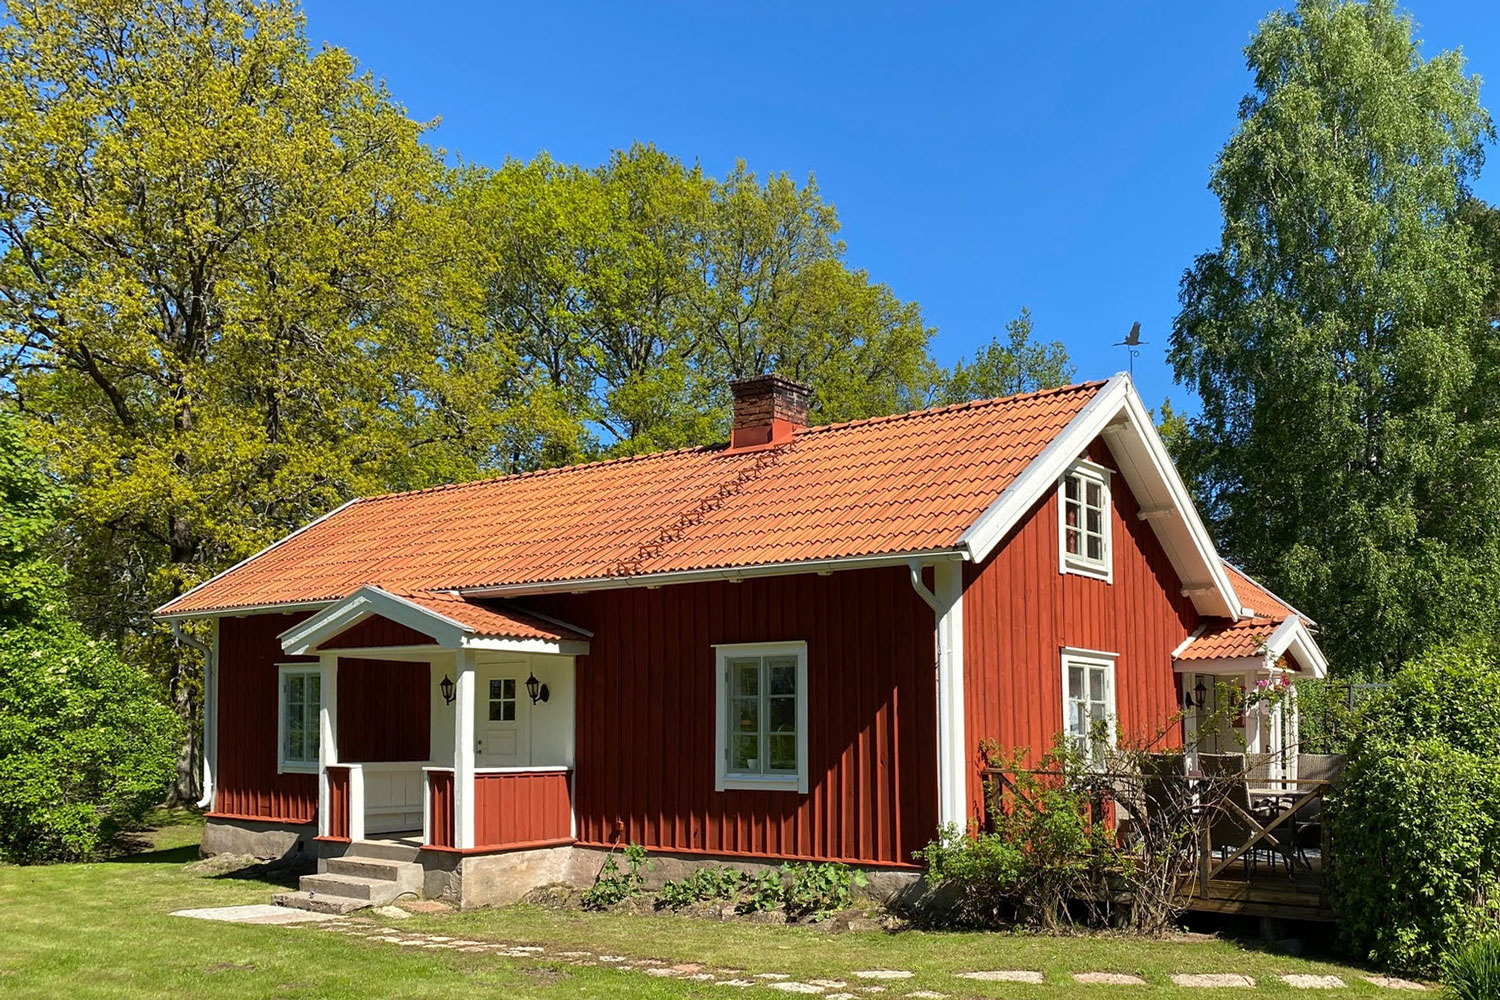 husbesiktning, energideklaration, rosenlund, falköping, kulturmiljö, länsförsäkringar, fastighetsförmedling